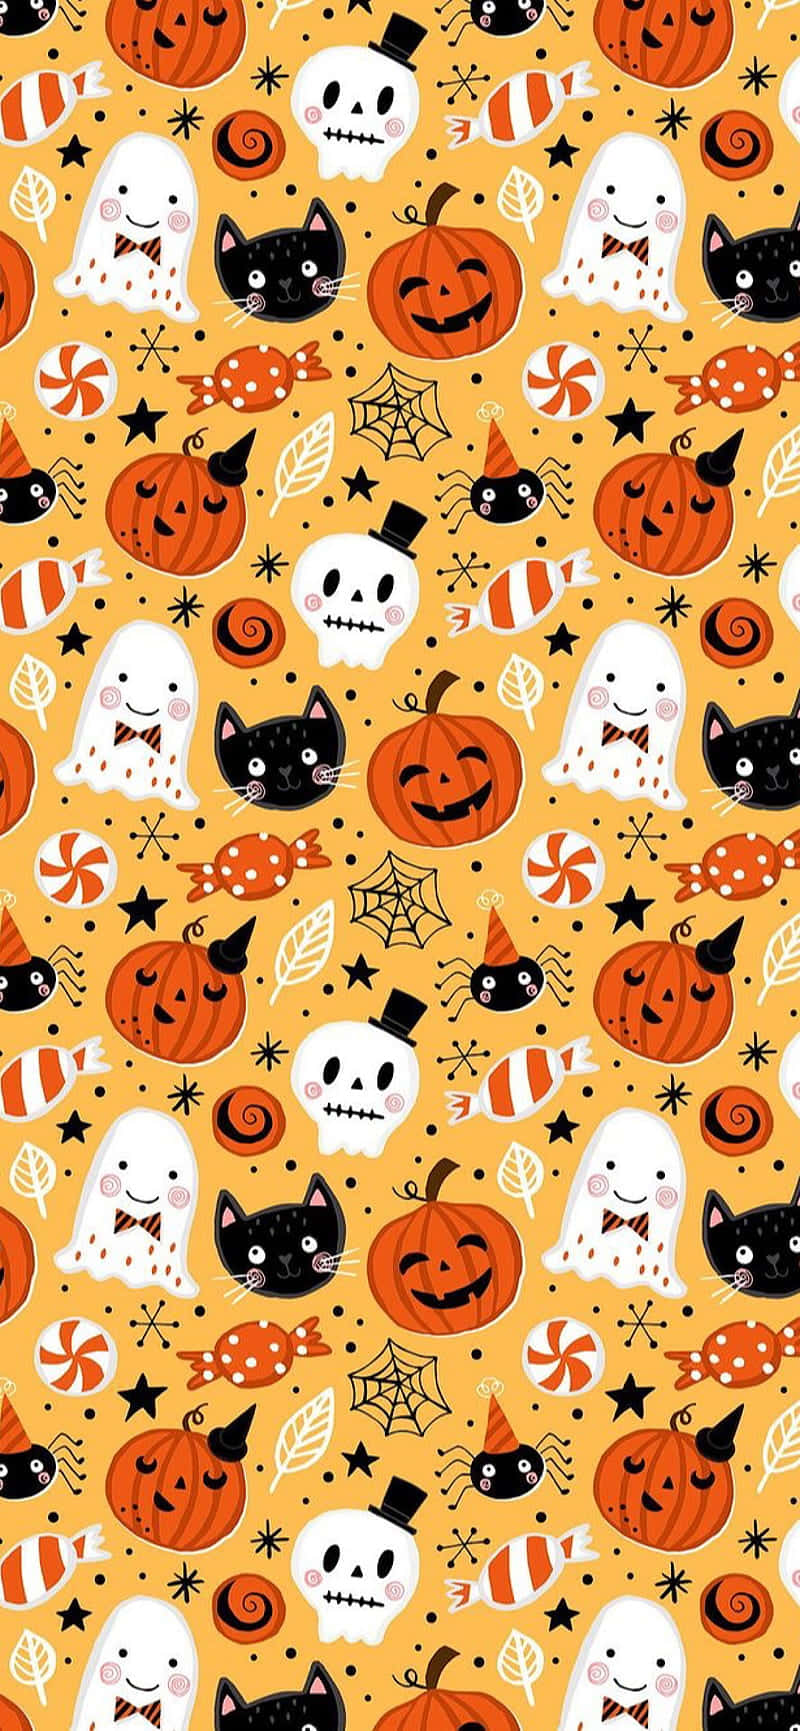 Descubrelo Espeluznante Y Divertido De Halloween Con Un Adorable Fondo De Pantalla De Halloween Para Iphone.